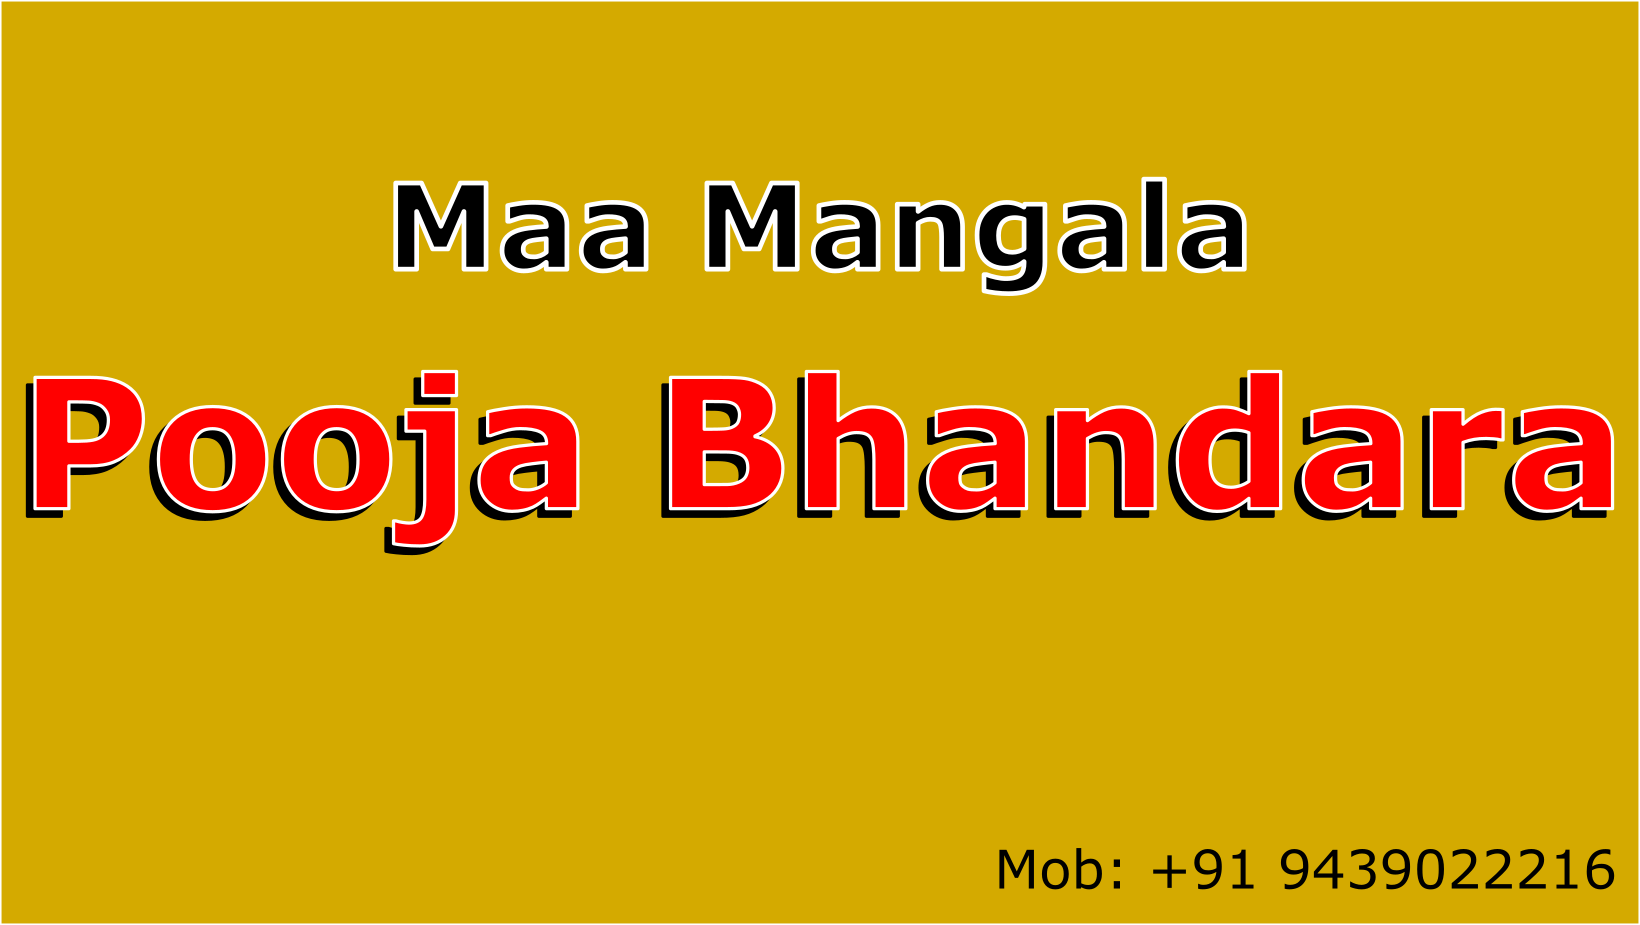 Maa Mangala Pooja Bhandara